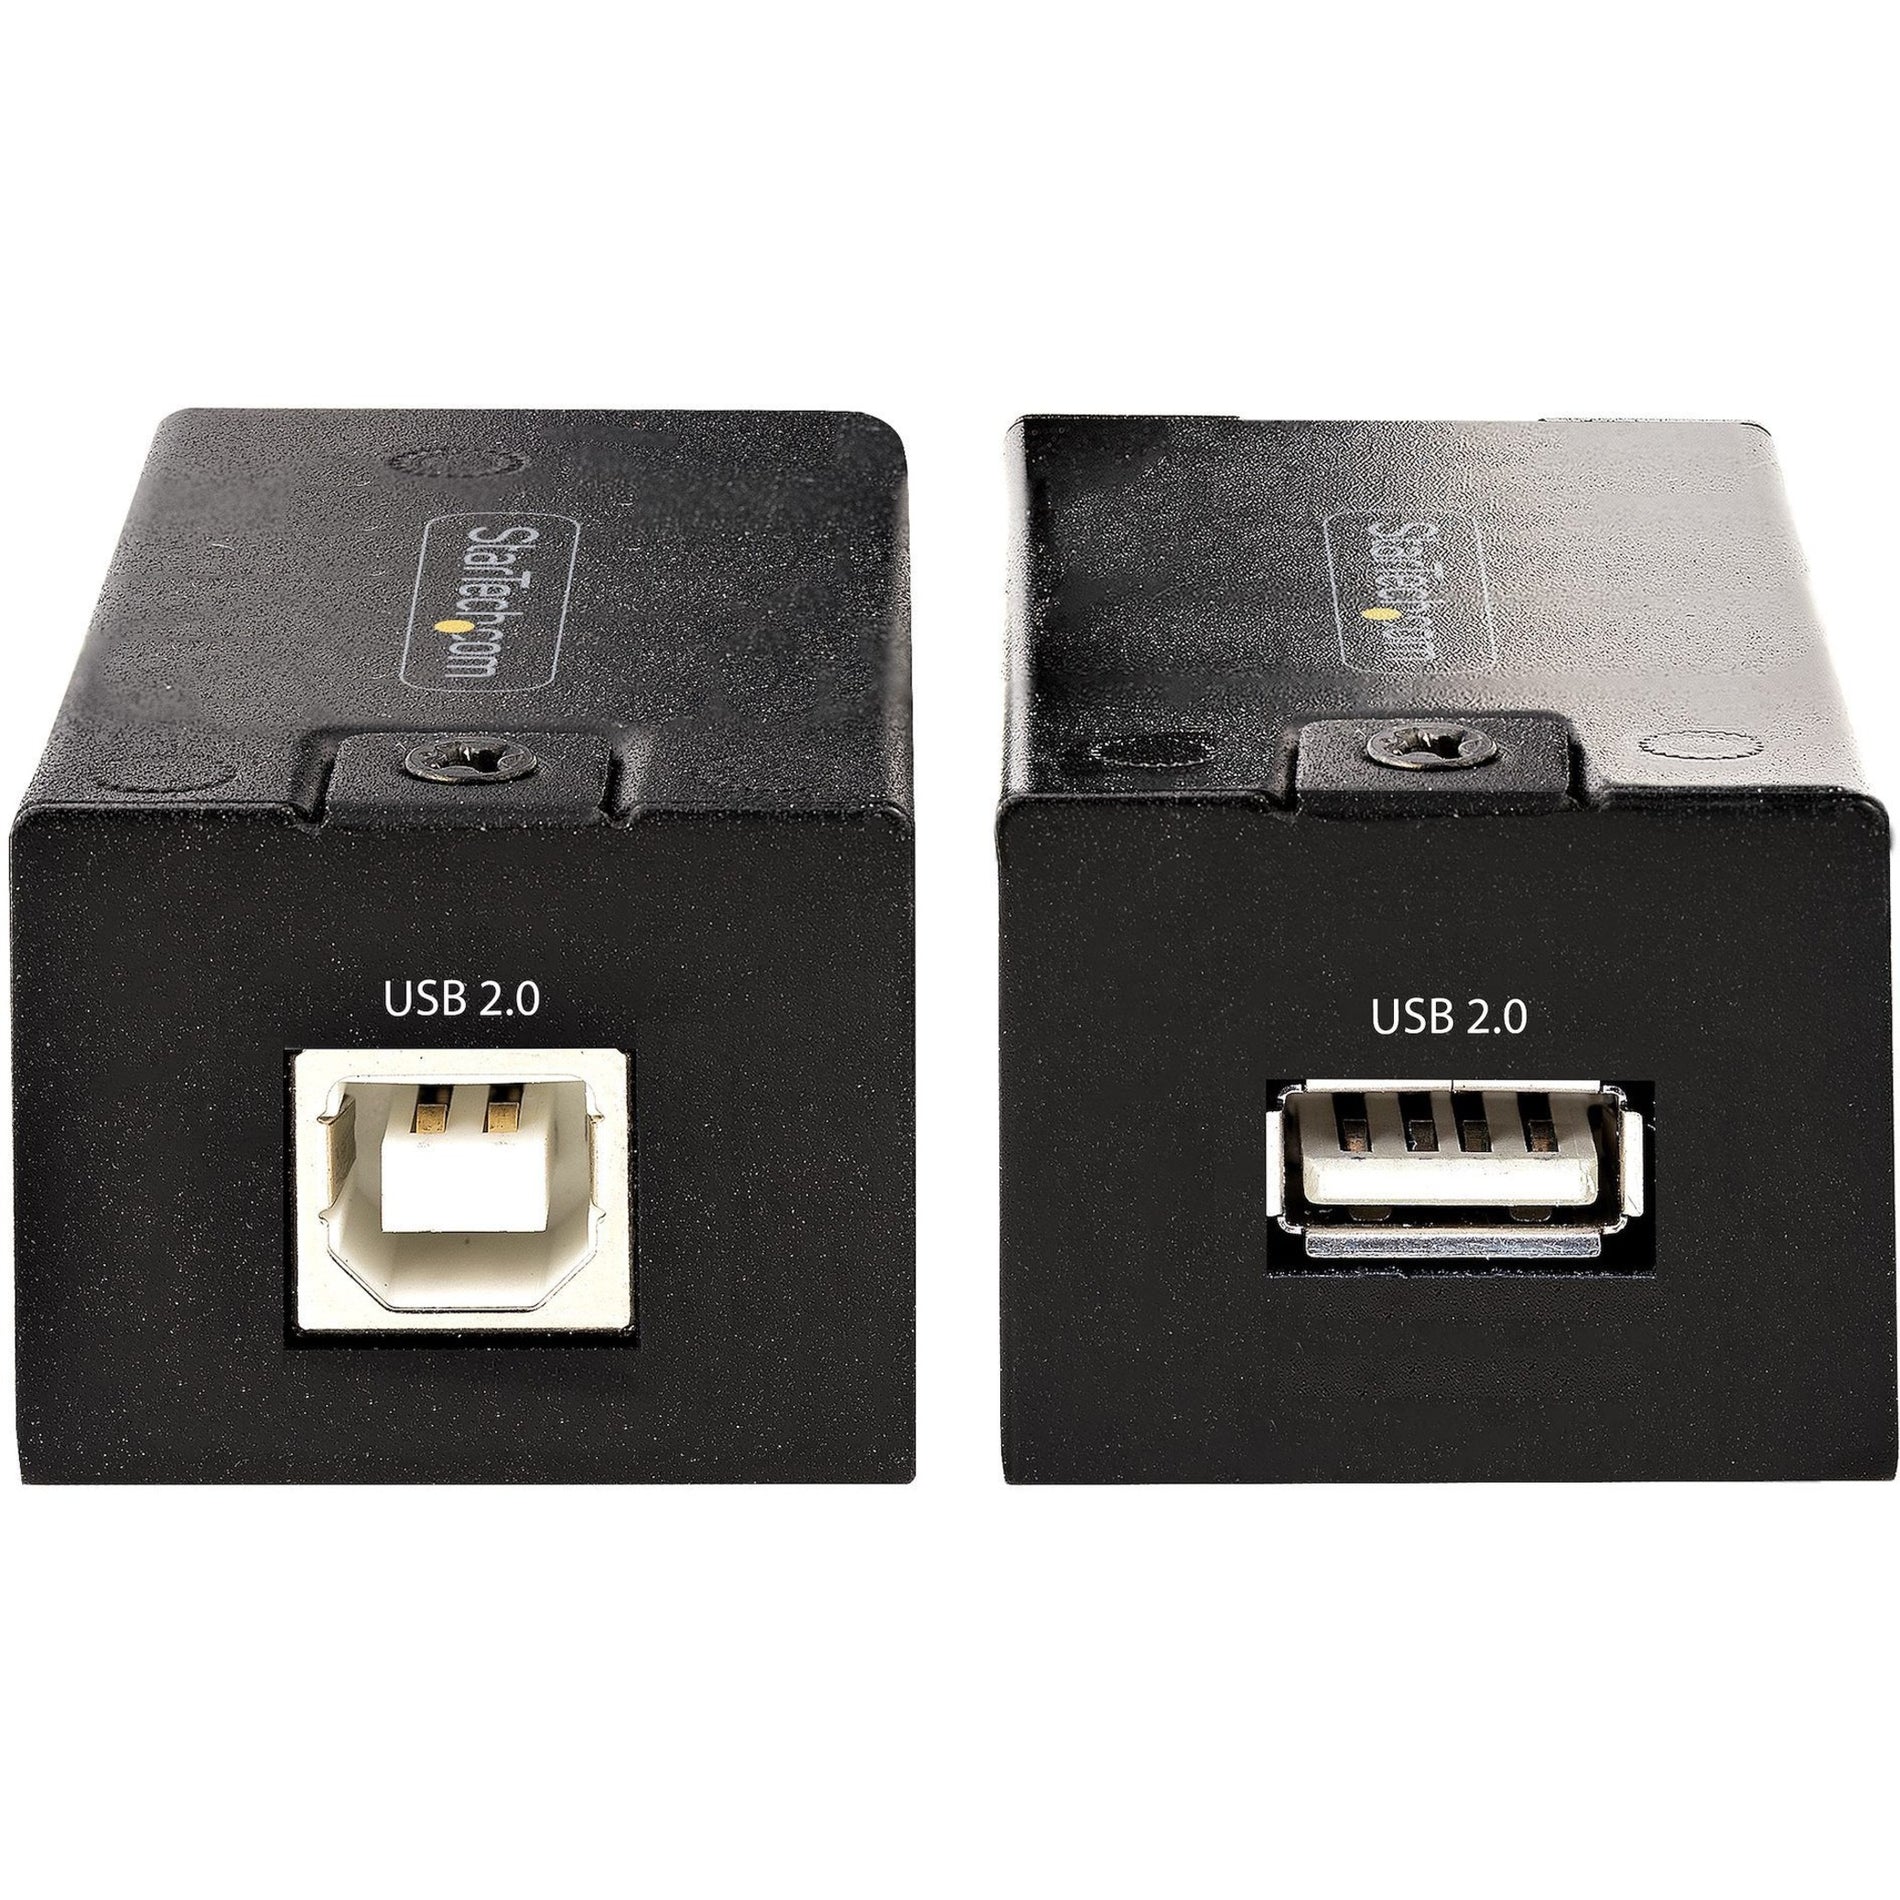 StarTech.com C15012-USB-EXTENDER تمديد USB عبر Cat5e/Cat6 (RJ45) 492 قدم تمديد USB عبر Ethernet/محول مجموعة.